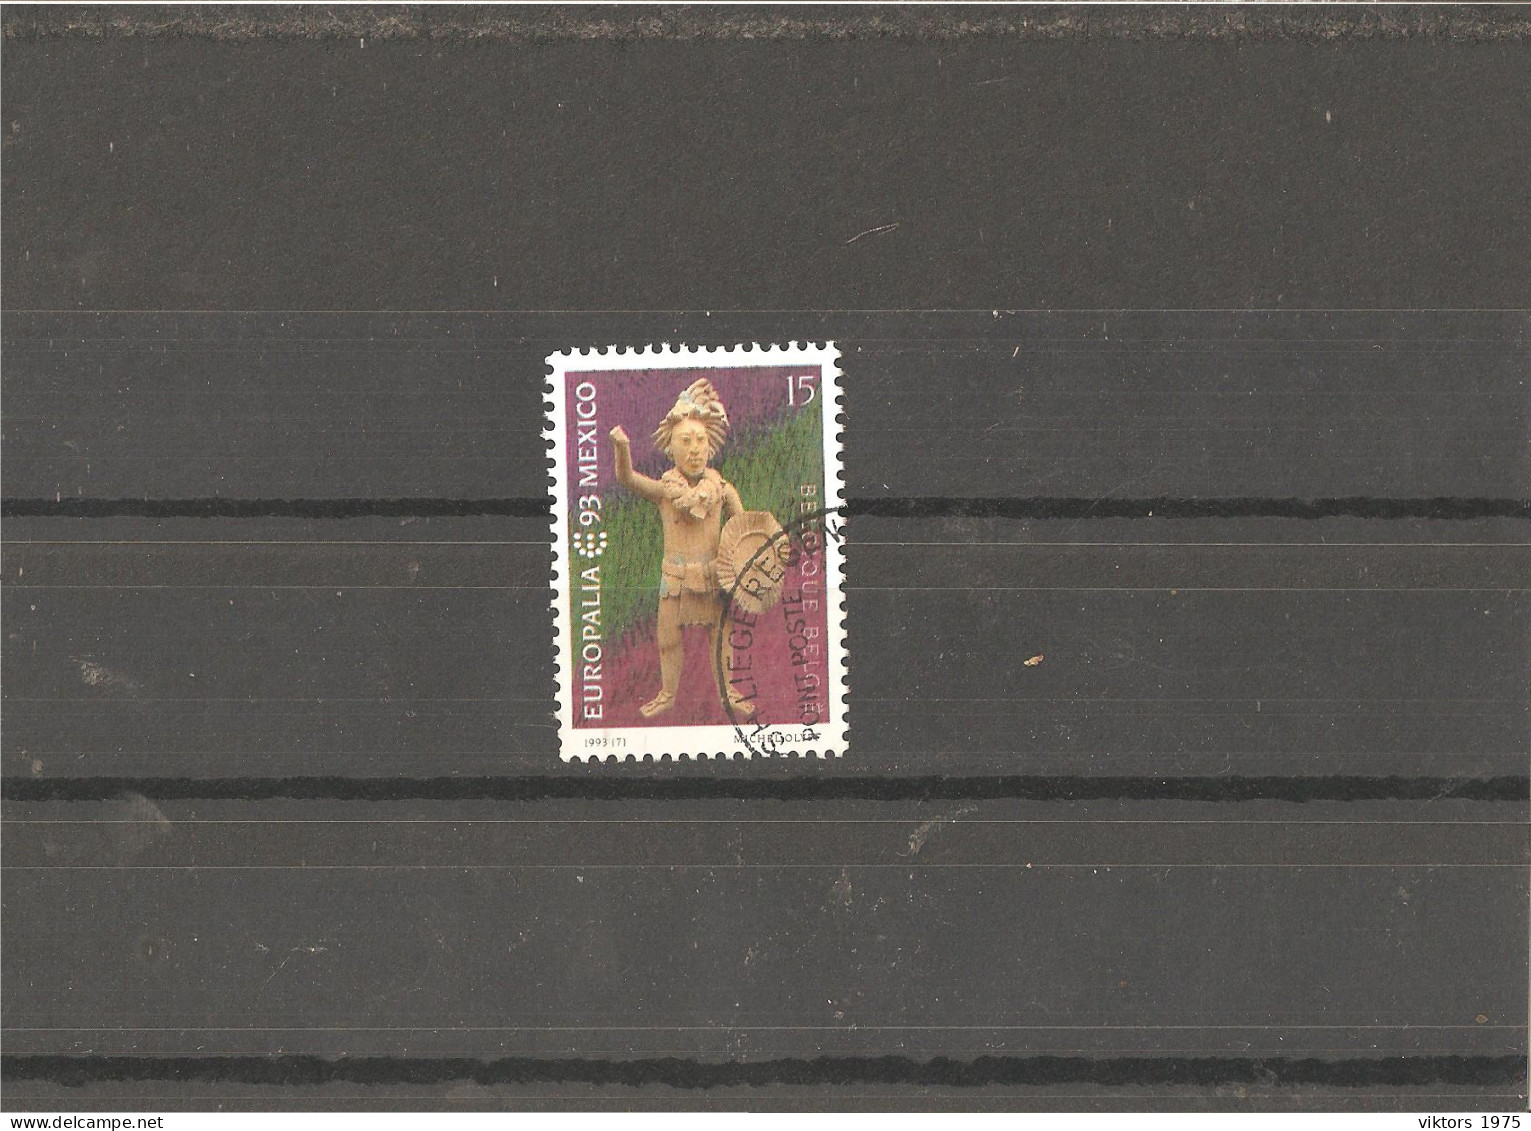 Used Stamp Nr.2560 In MICHEL Catalog - Usati